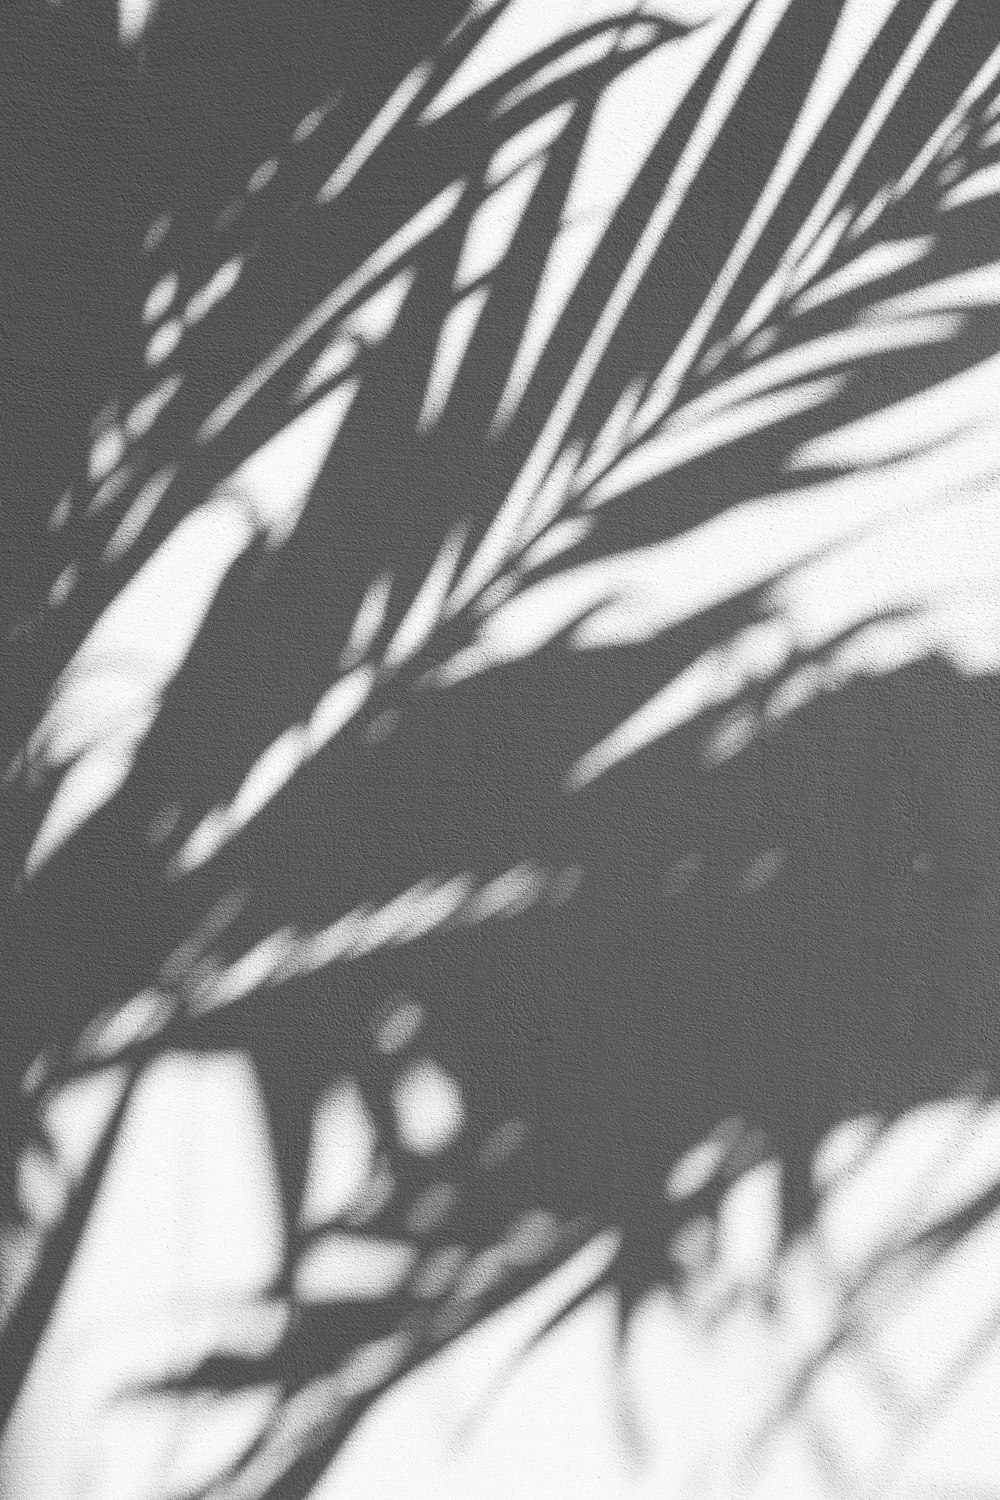 silhueta da palmeira